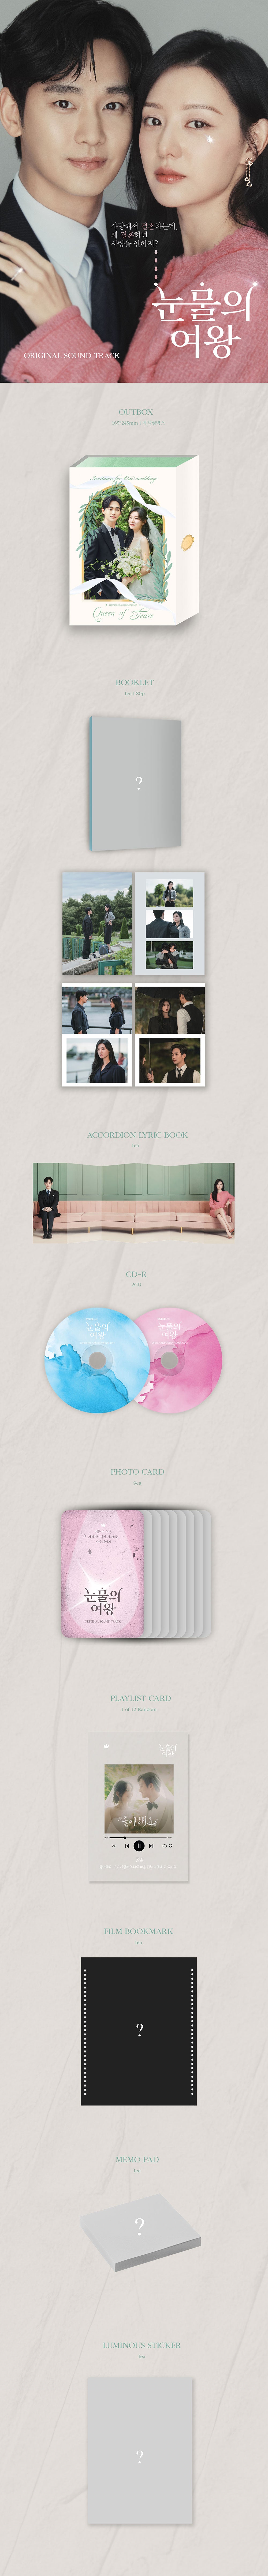 Queen of Tears OST (2CD)